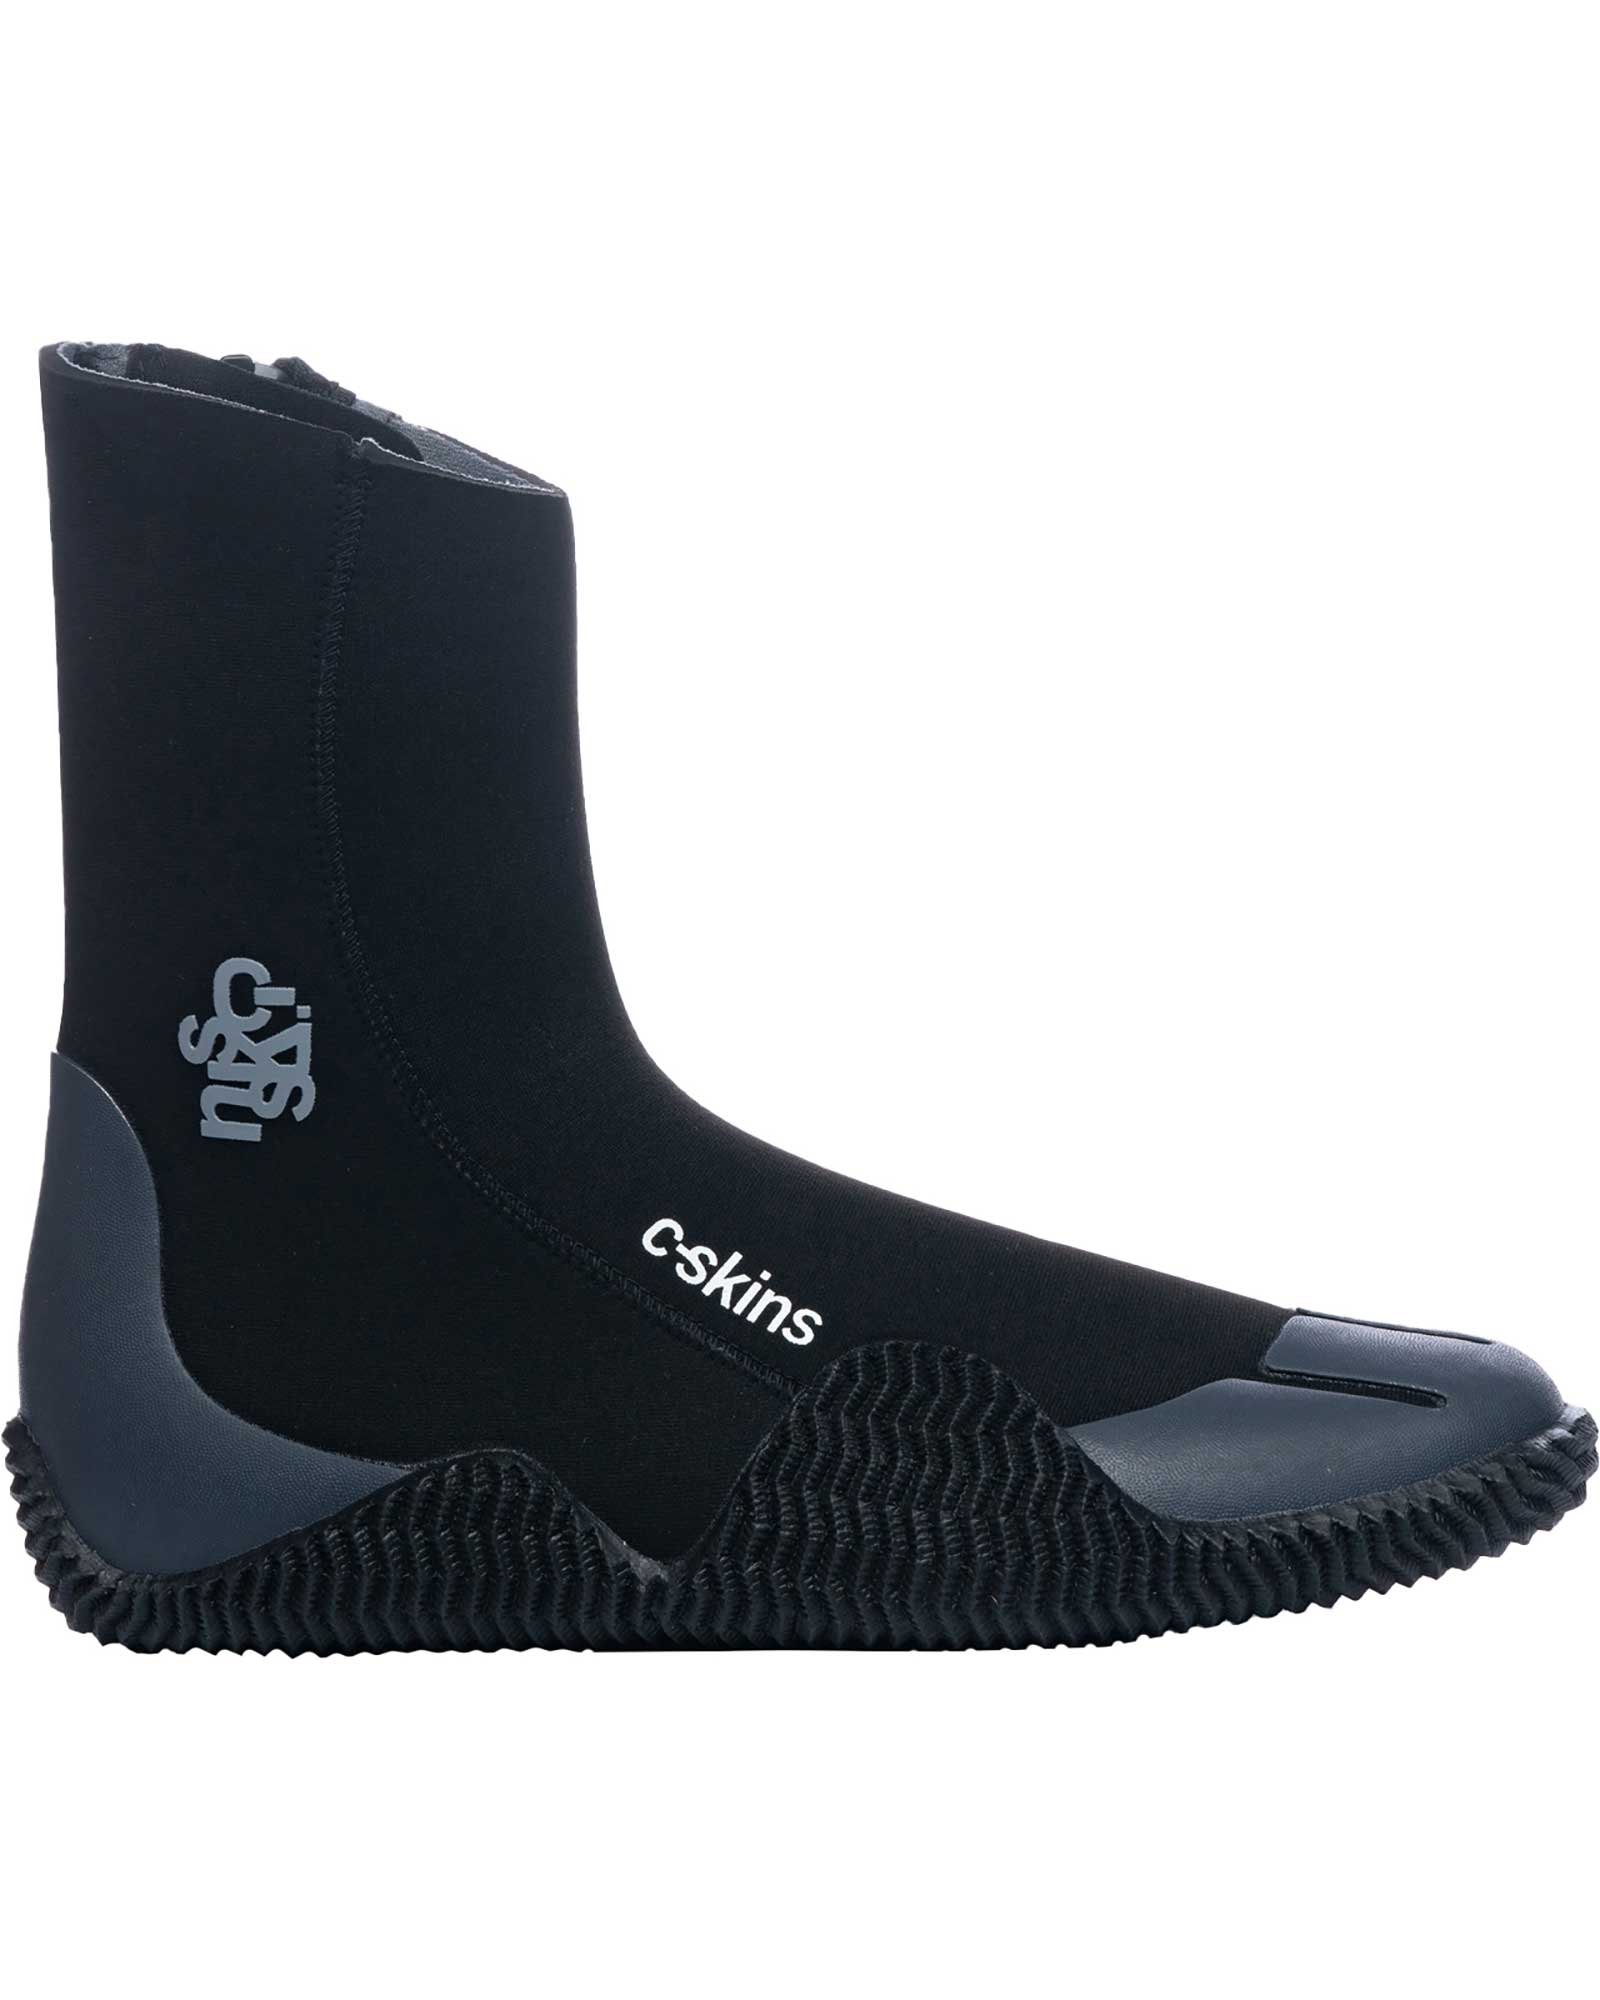 C Skins Legend 5mm Zipped Boots - Black/Charcoal UK 5